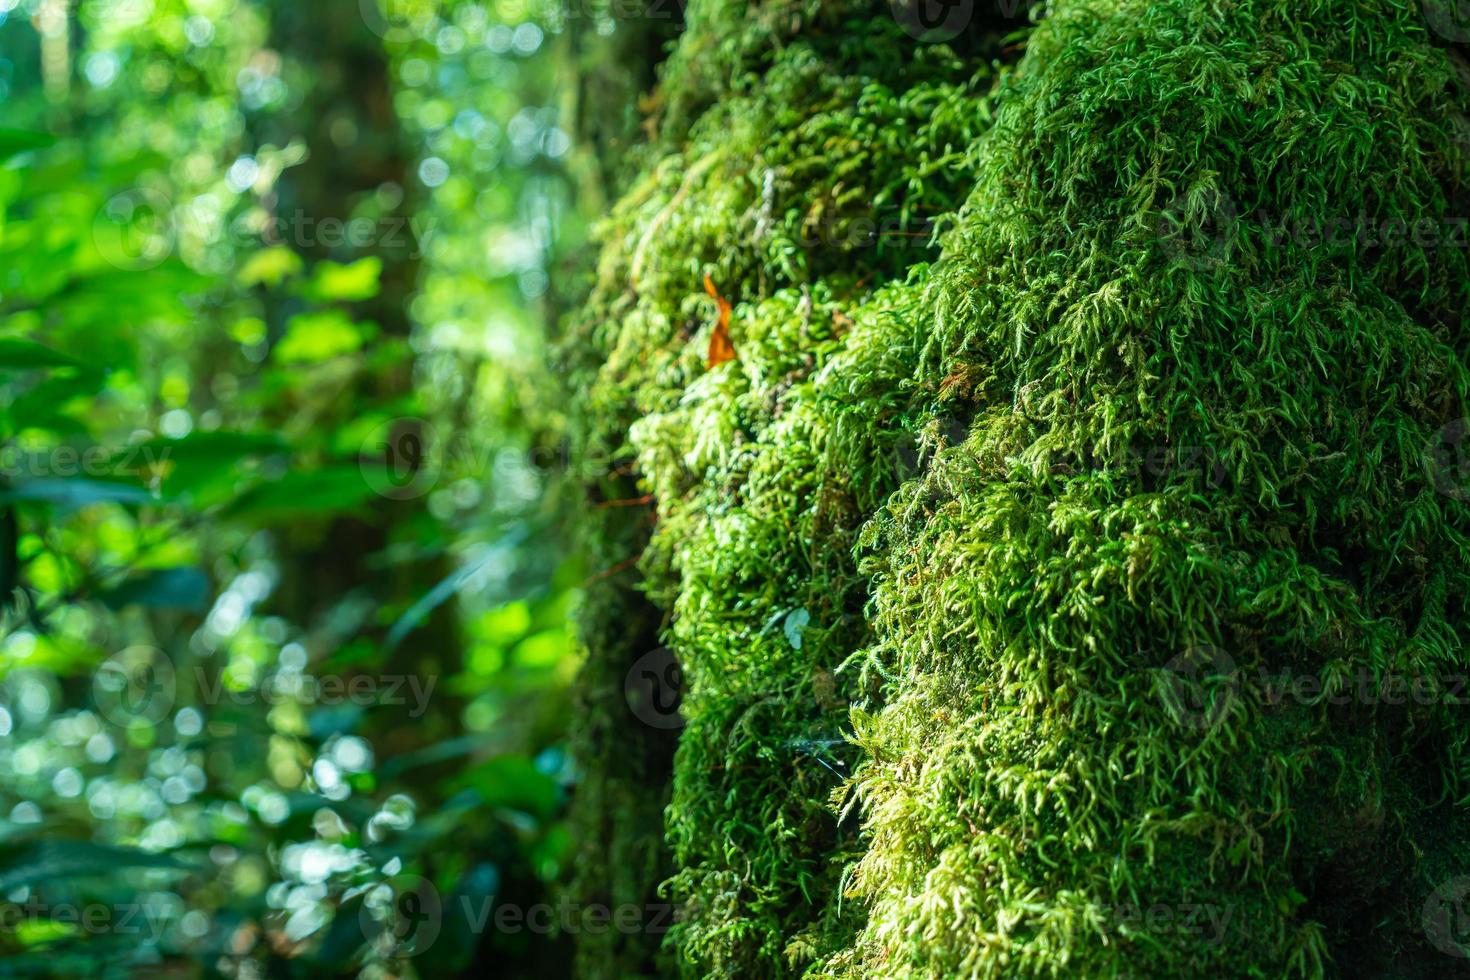 close-up groen mos op boom in het bos foto